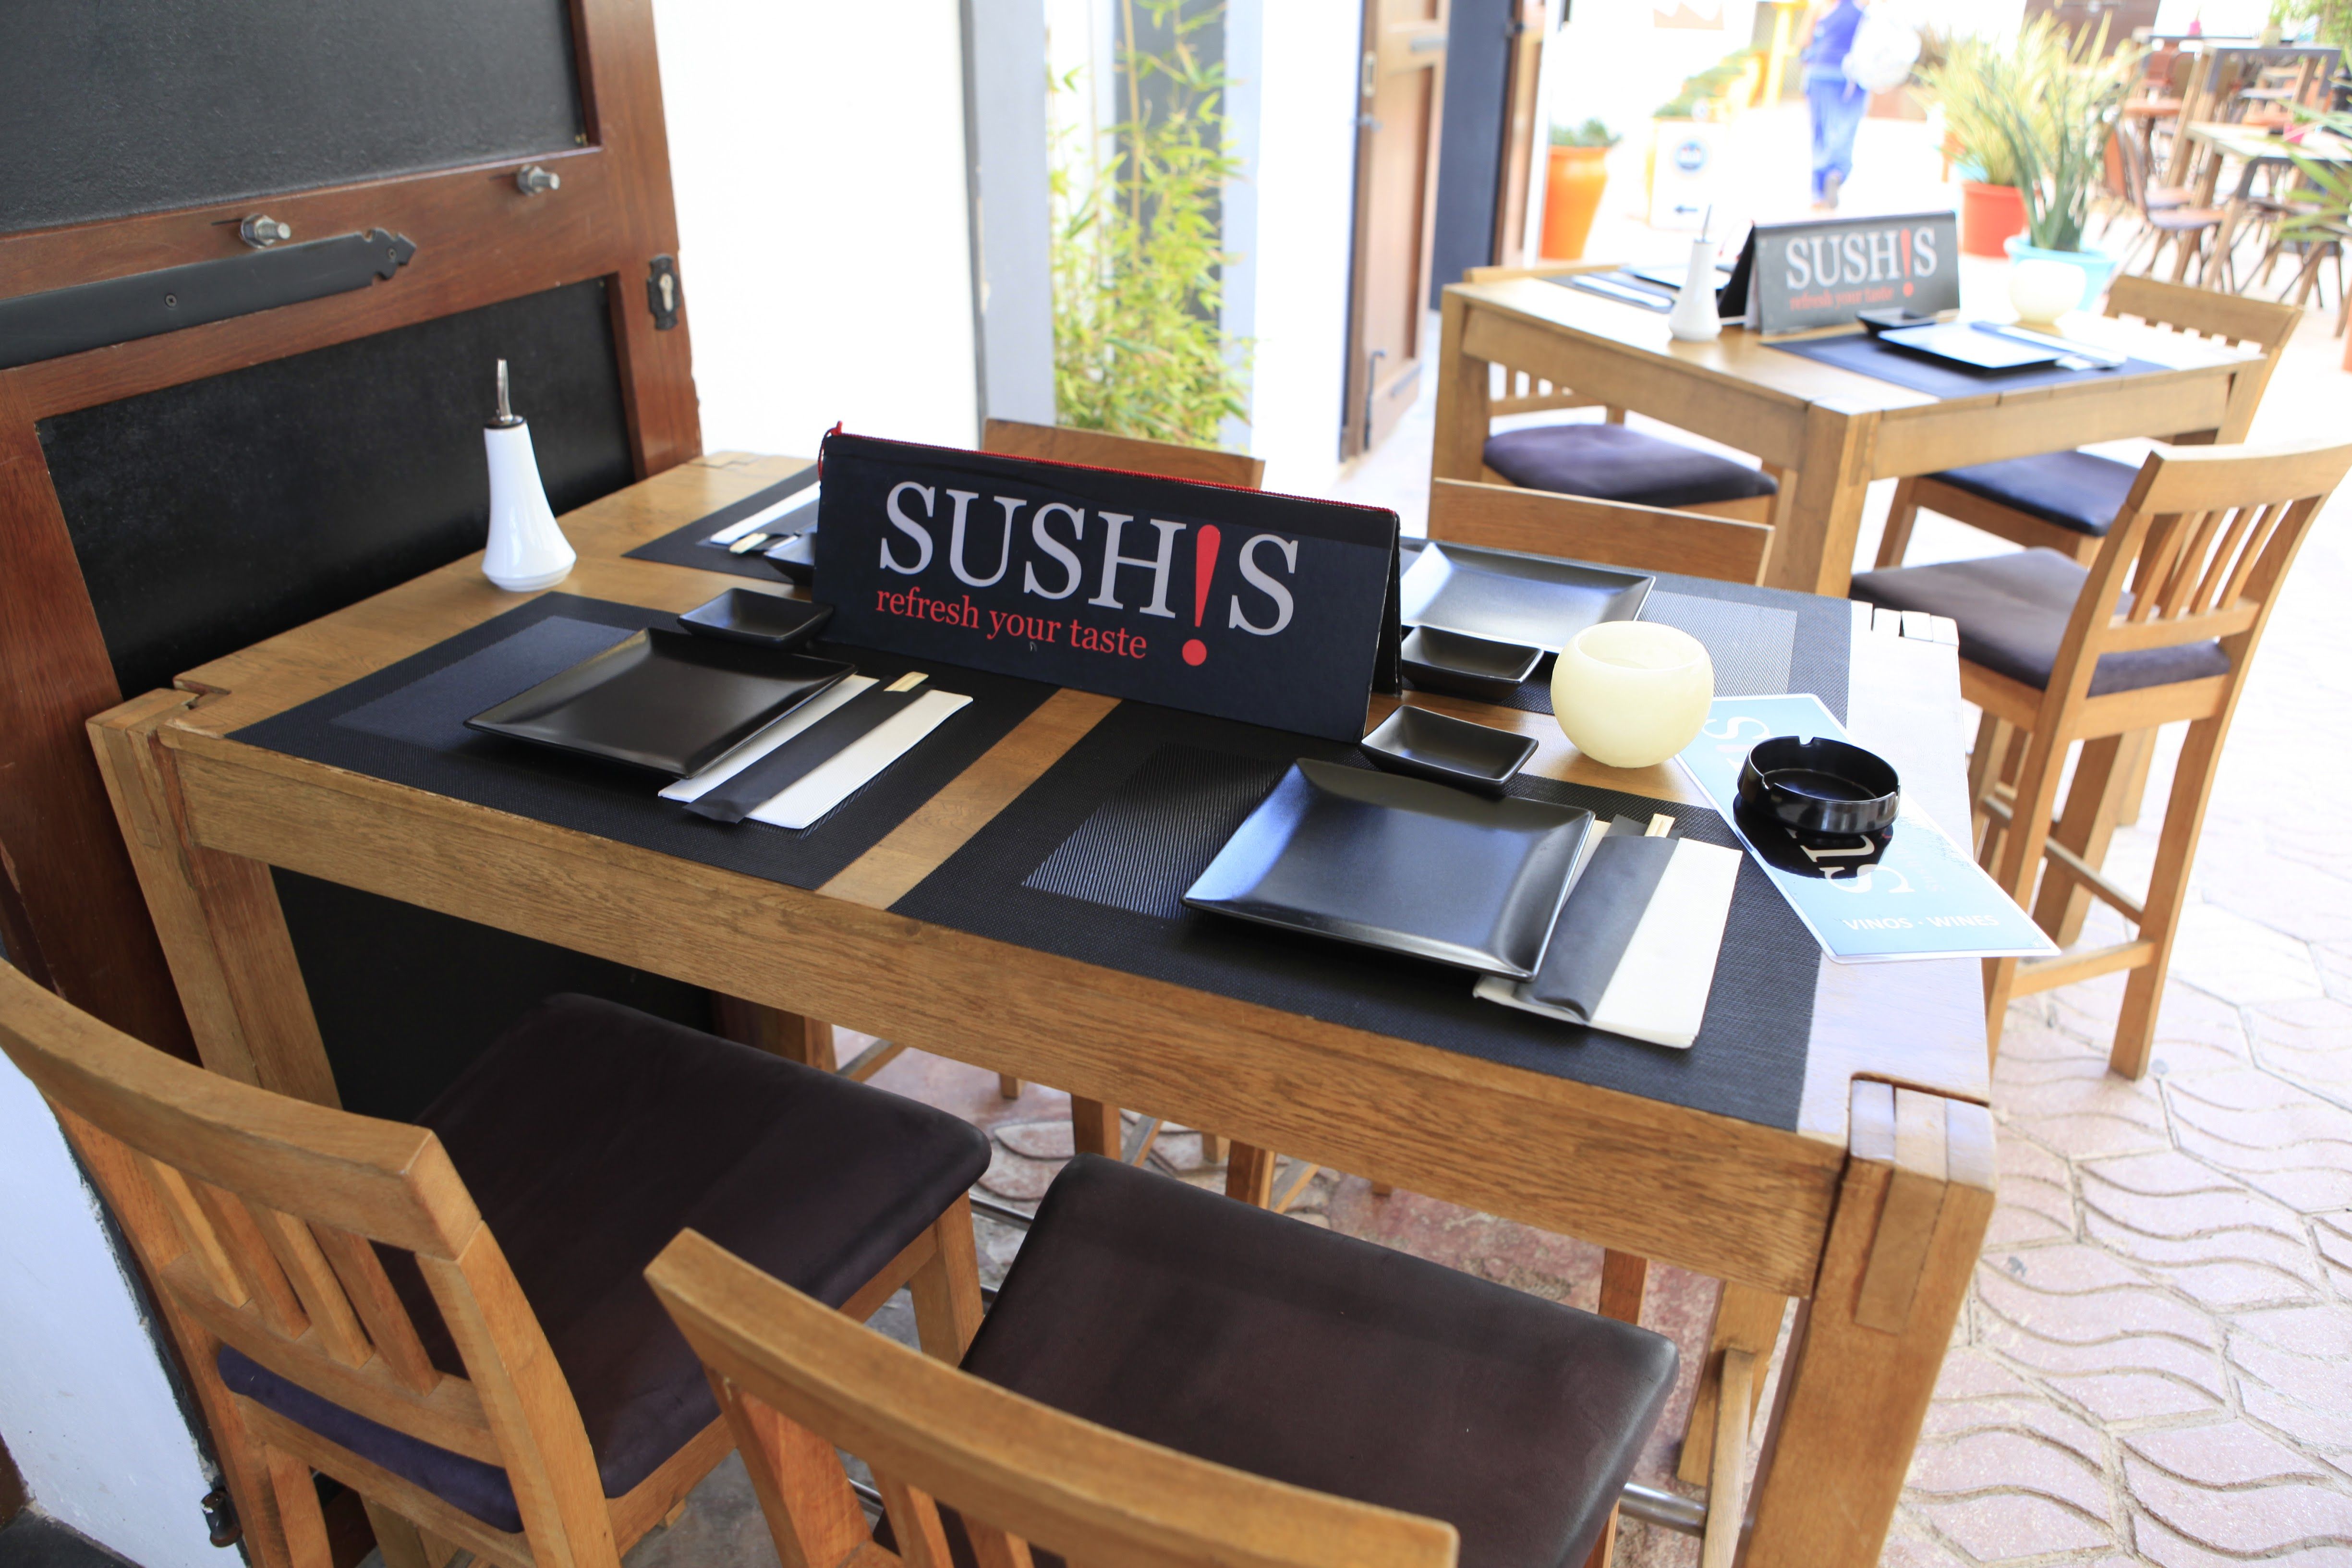 Foto 11 de Cocina japonesa en Ibiza | Sushis Ibiza